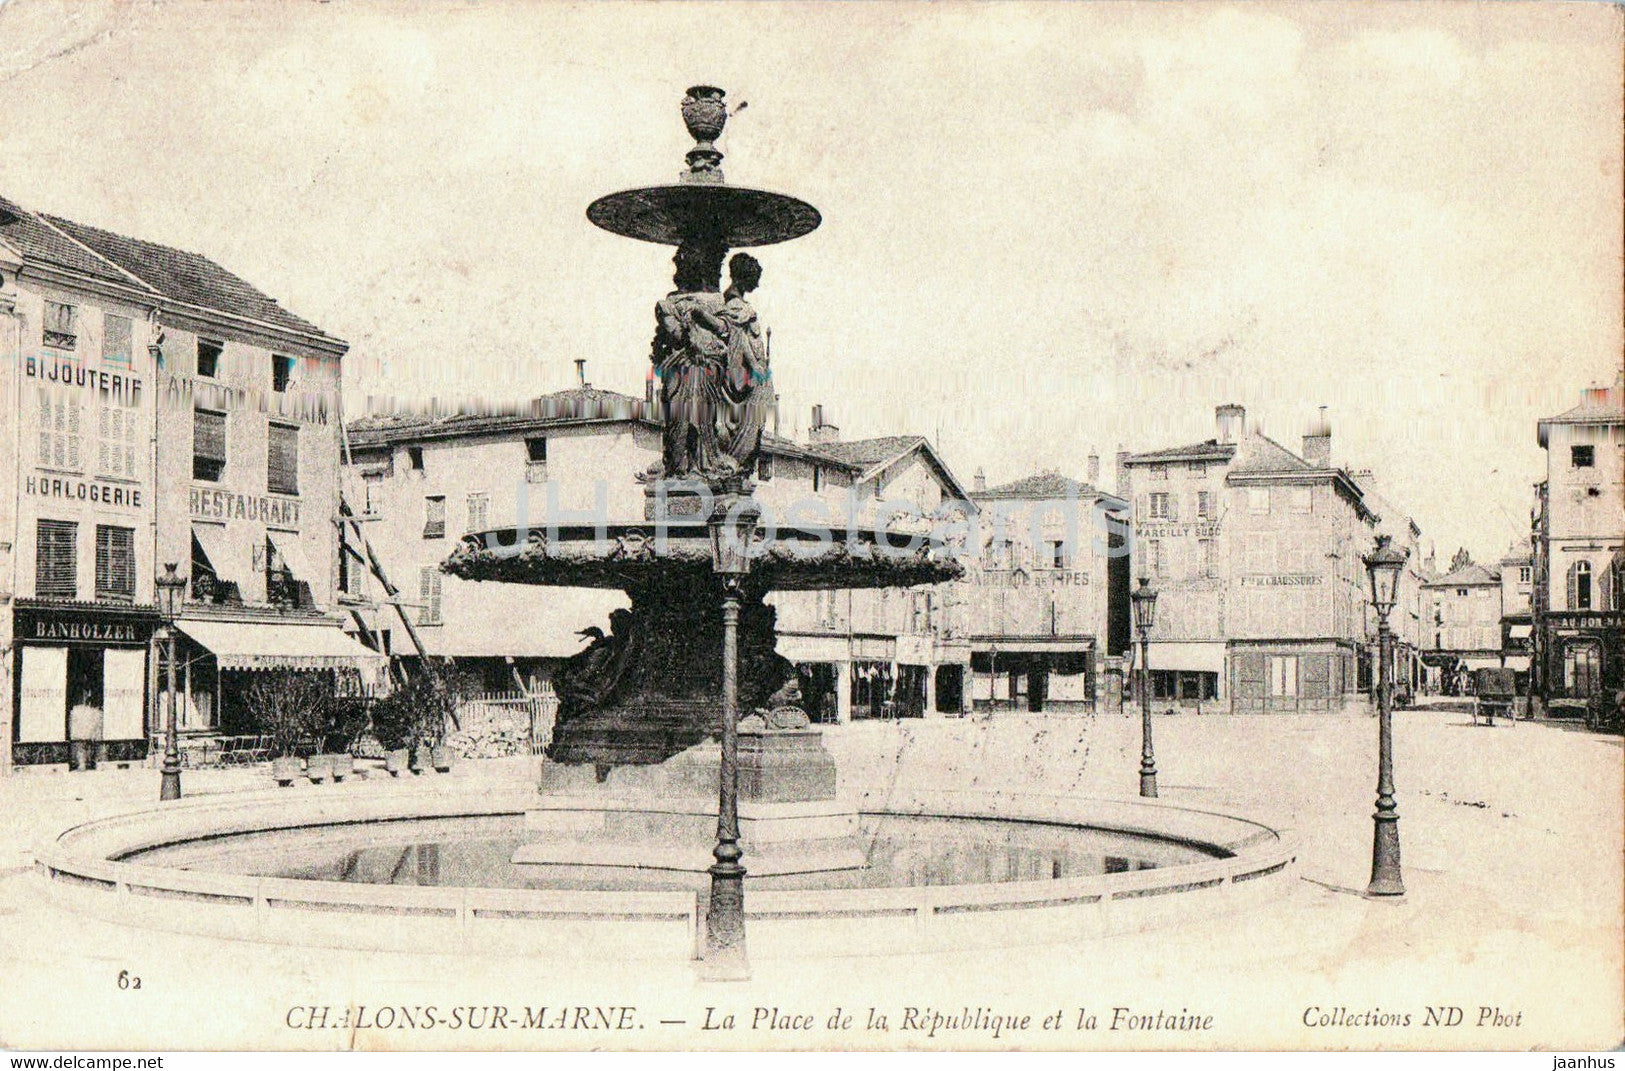 Chalons sur Marne - La Place de la Republique et la Fontaine - 62 - old postcard - 1908 - France - used - JH Postcards